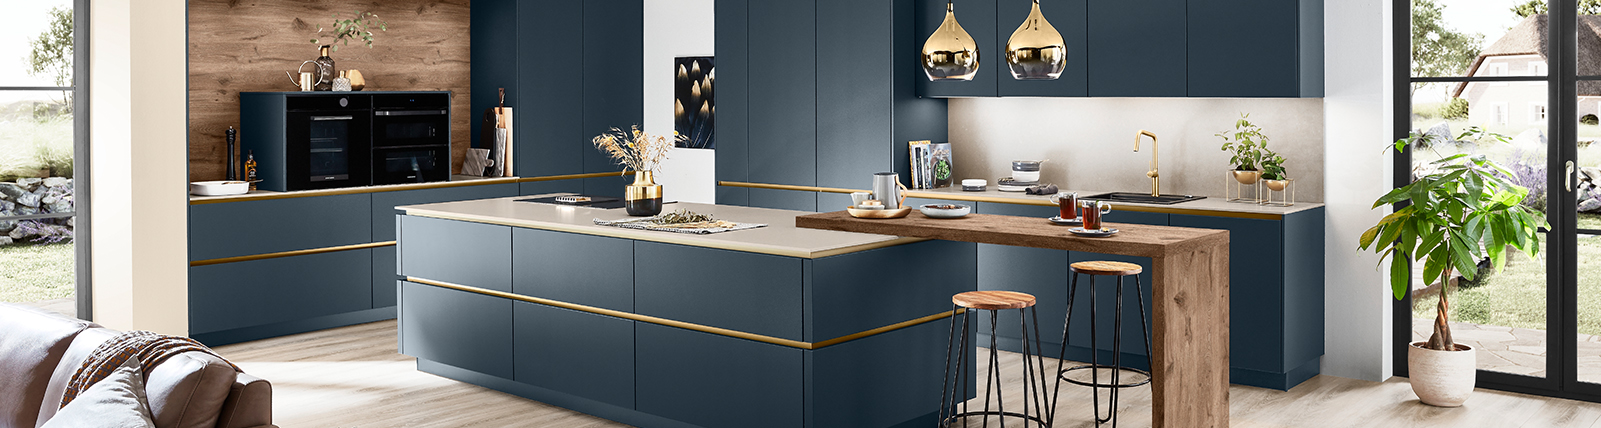 Cucina contemporanea con mobili blu navy, dettagli in ottone, elettrodomestici integrati e un bancone per la colazione in legno, completata dalla luce naturale e dal verde.